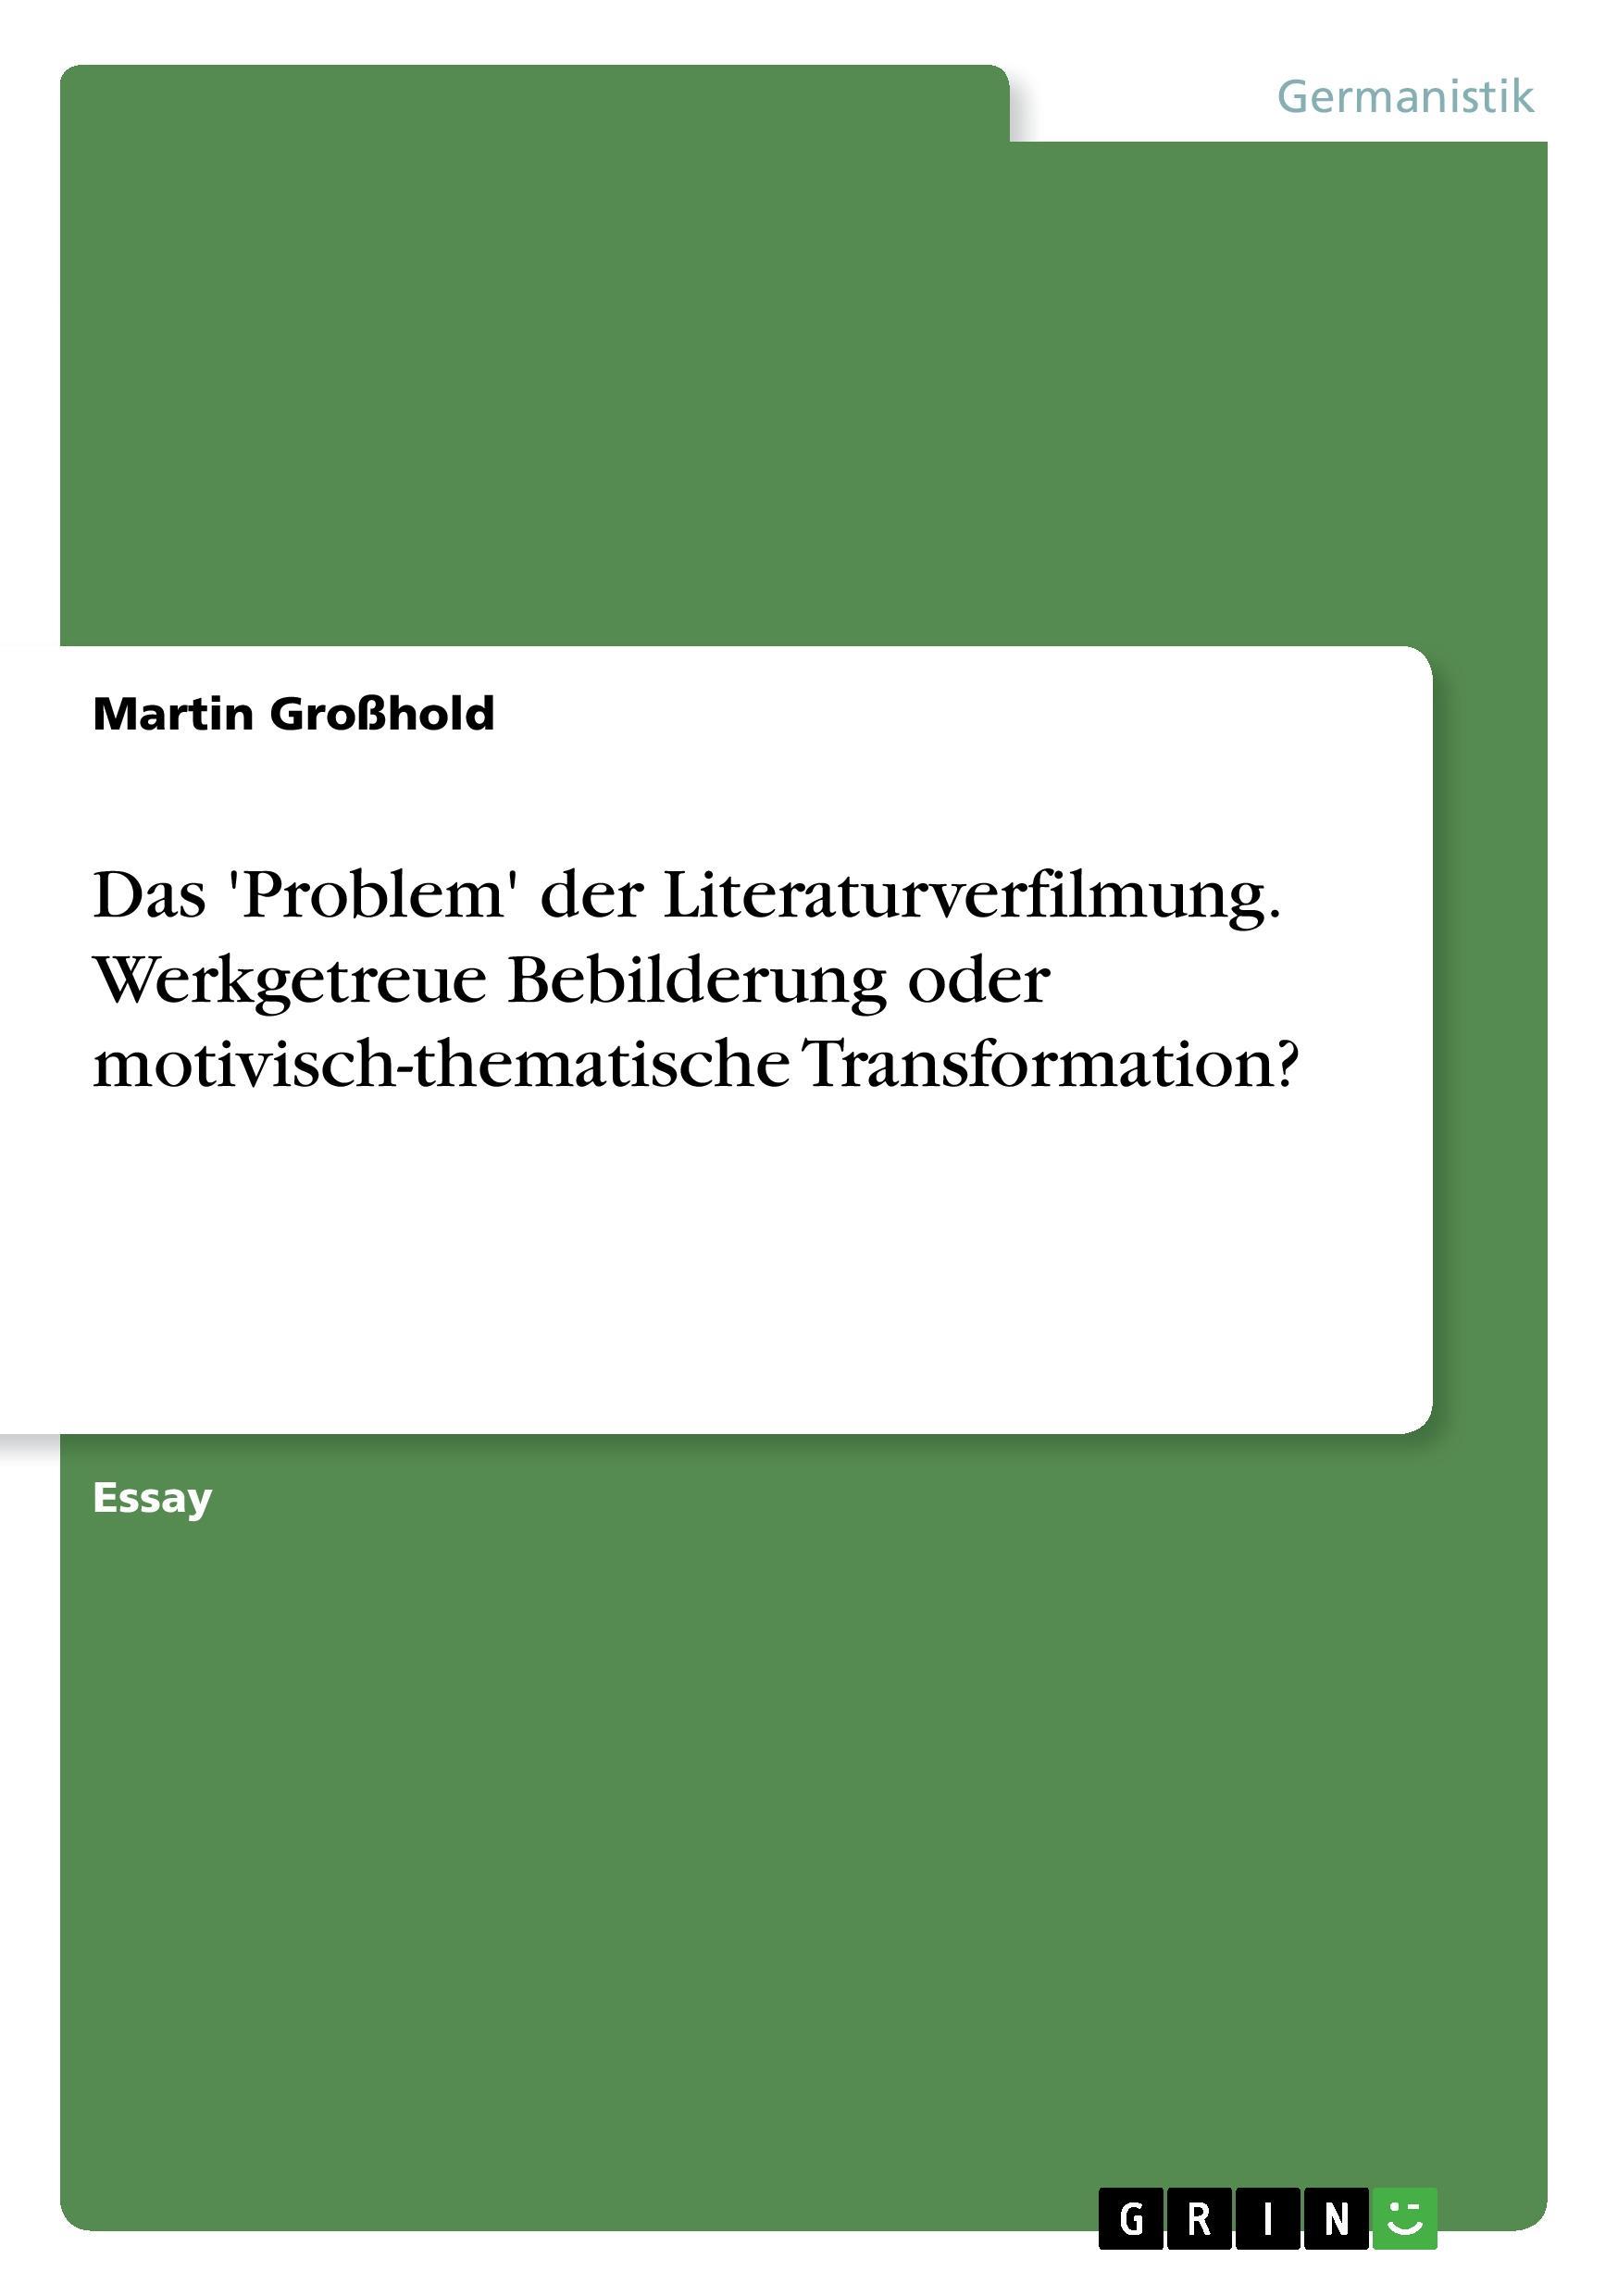 Das  Problem  der Literaturverfilmung. Werkgetreue Bebilderung oder motivisch-thematische Transformation? - Grosshold, Martin